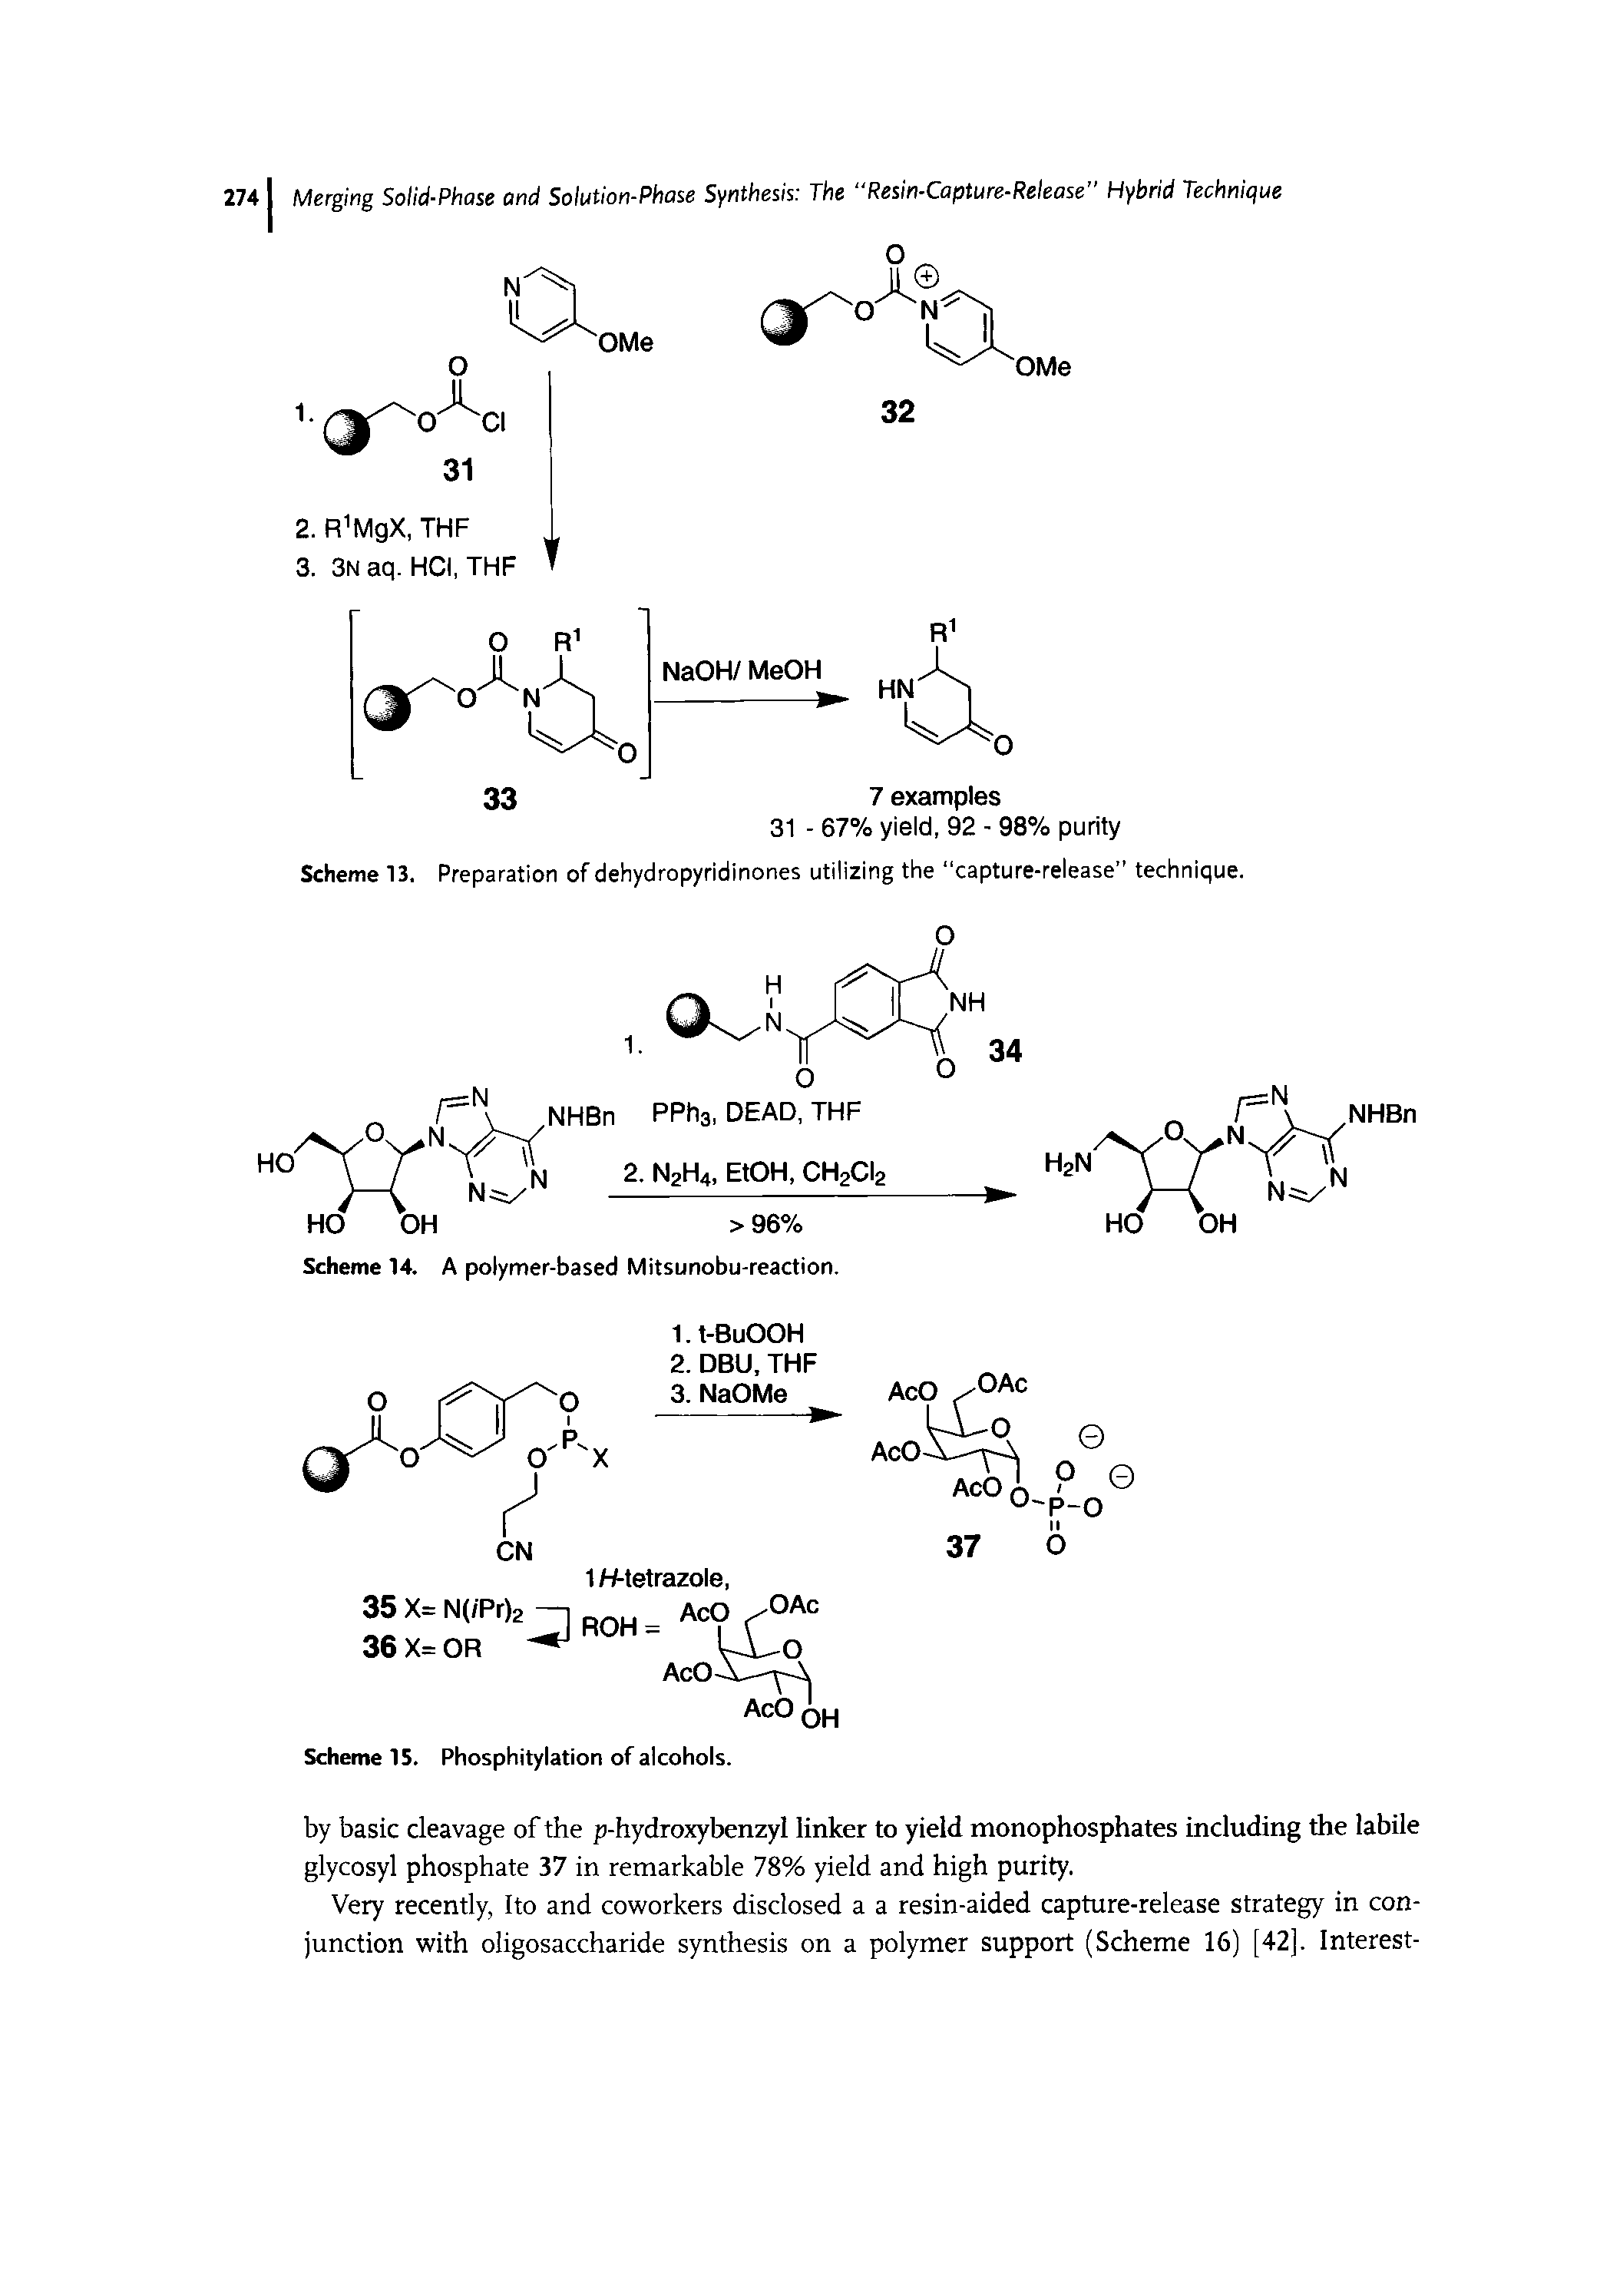 Scheme 13. Preparation of dehydropyridinones utilizing the "capture-release" technique.